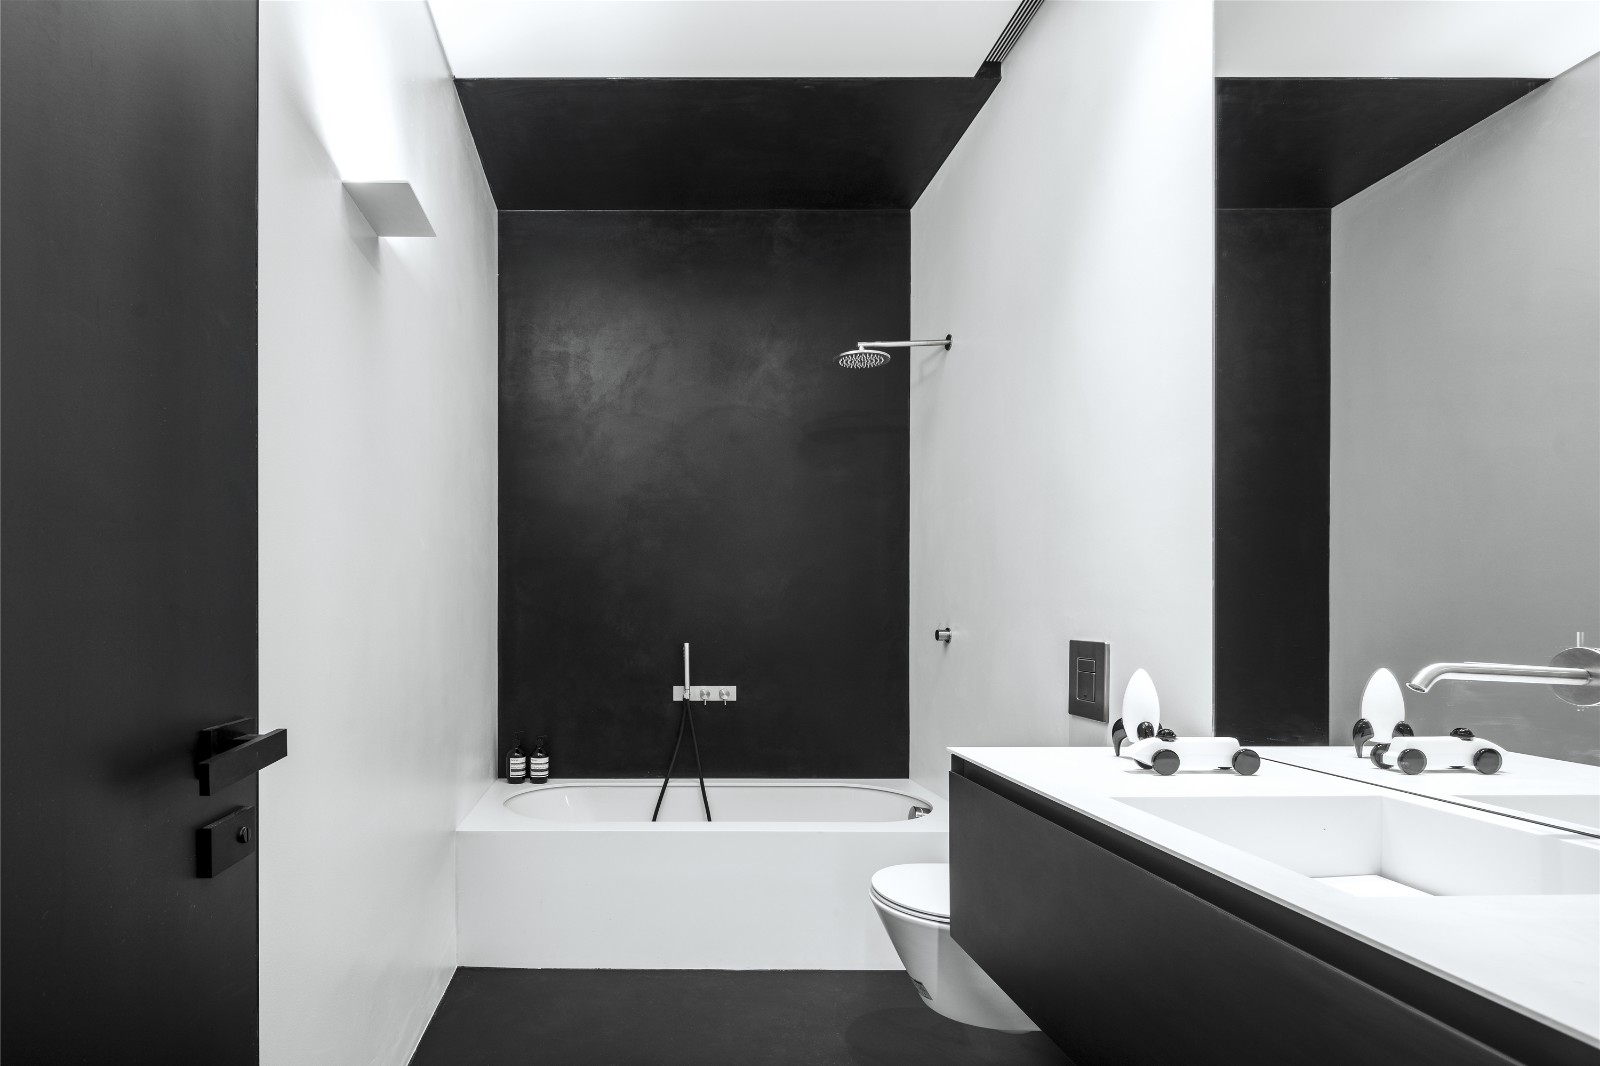 卫浴间黑白配色的背景给生活带来真实感，空间简简单单，美的不加修饰。